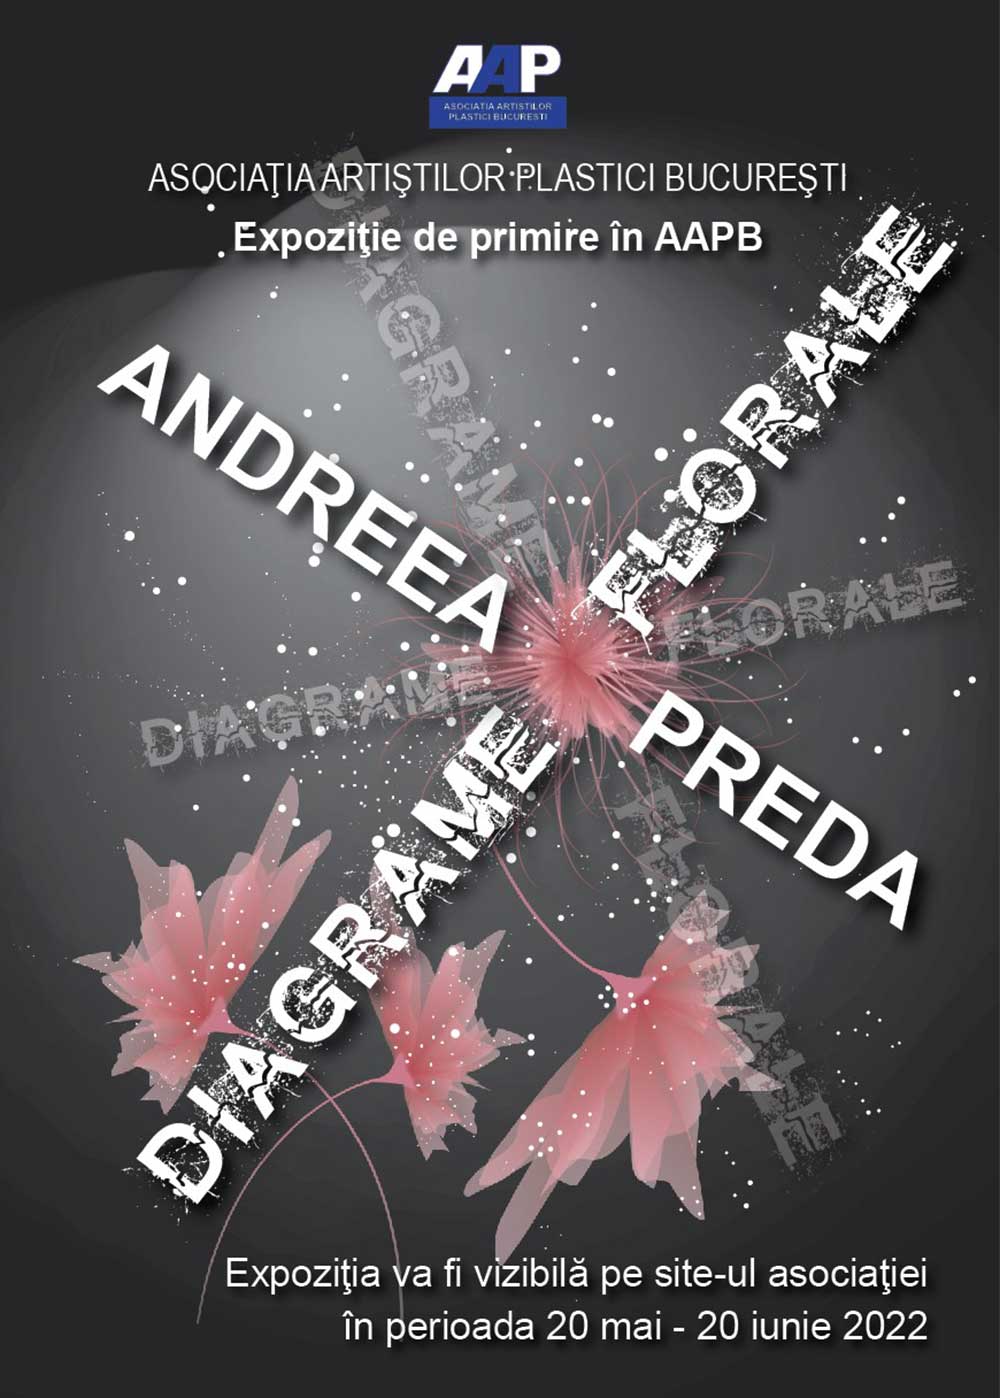 Andreea Preda „DIAGRAME FLORALE” - expoziţie de primire în AAPB - (20 mai - 20 iunie 2022) - ONLINE